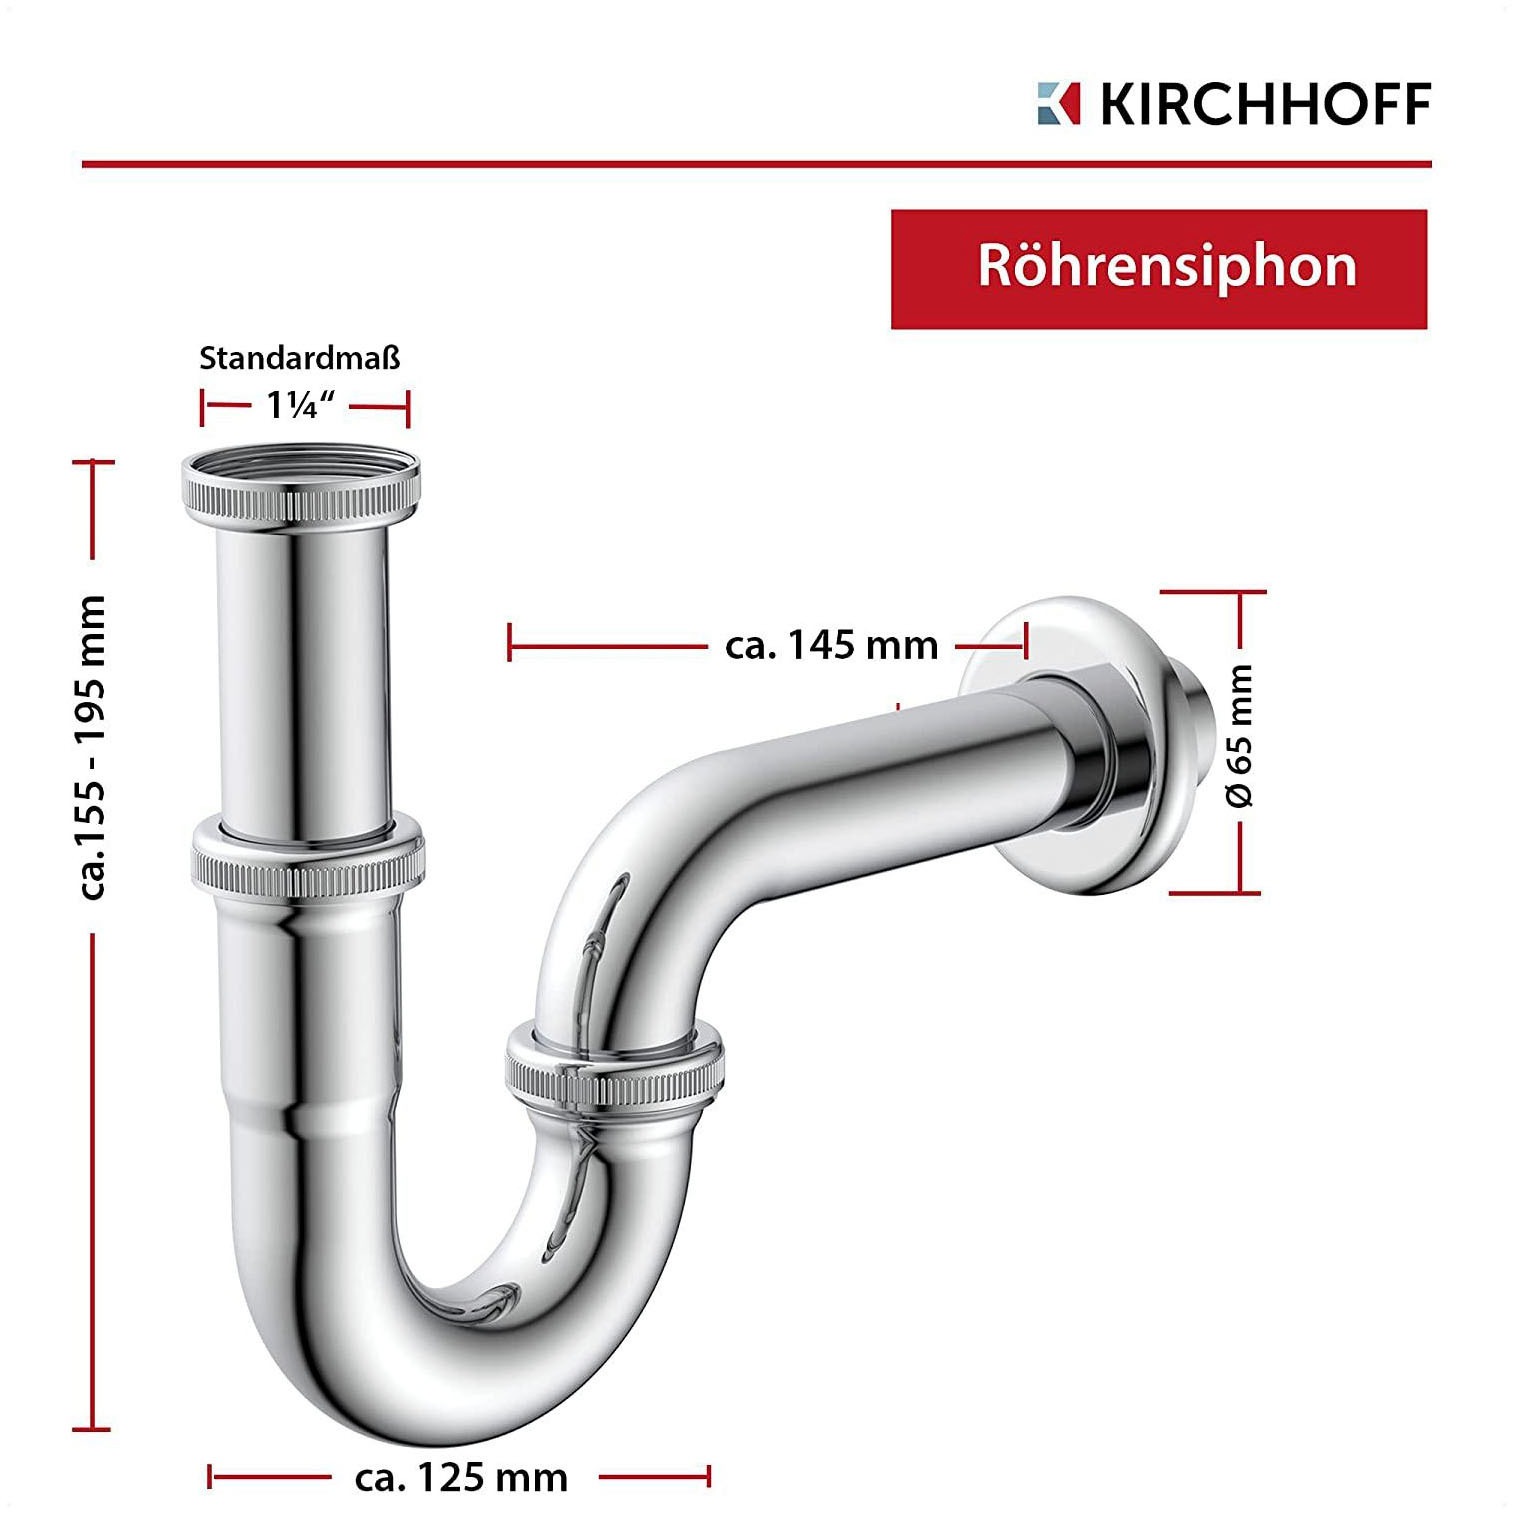 Kirchhoff Siphon, Röhrensiphon, Chrom, 1 1/4" x 32 mm